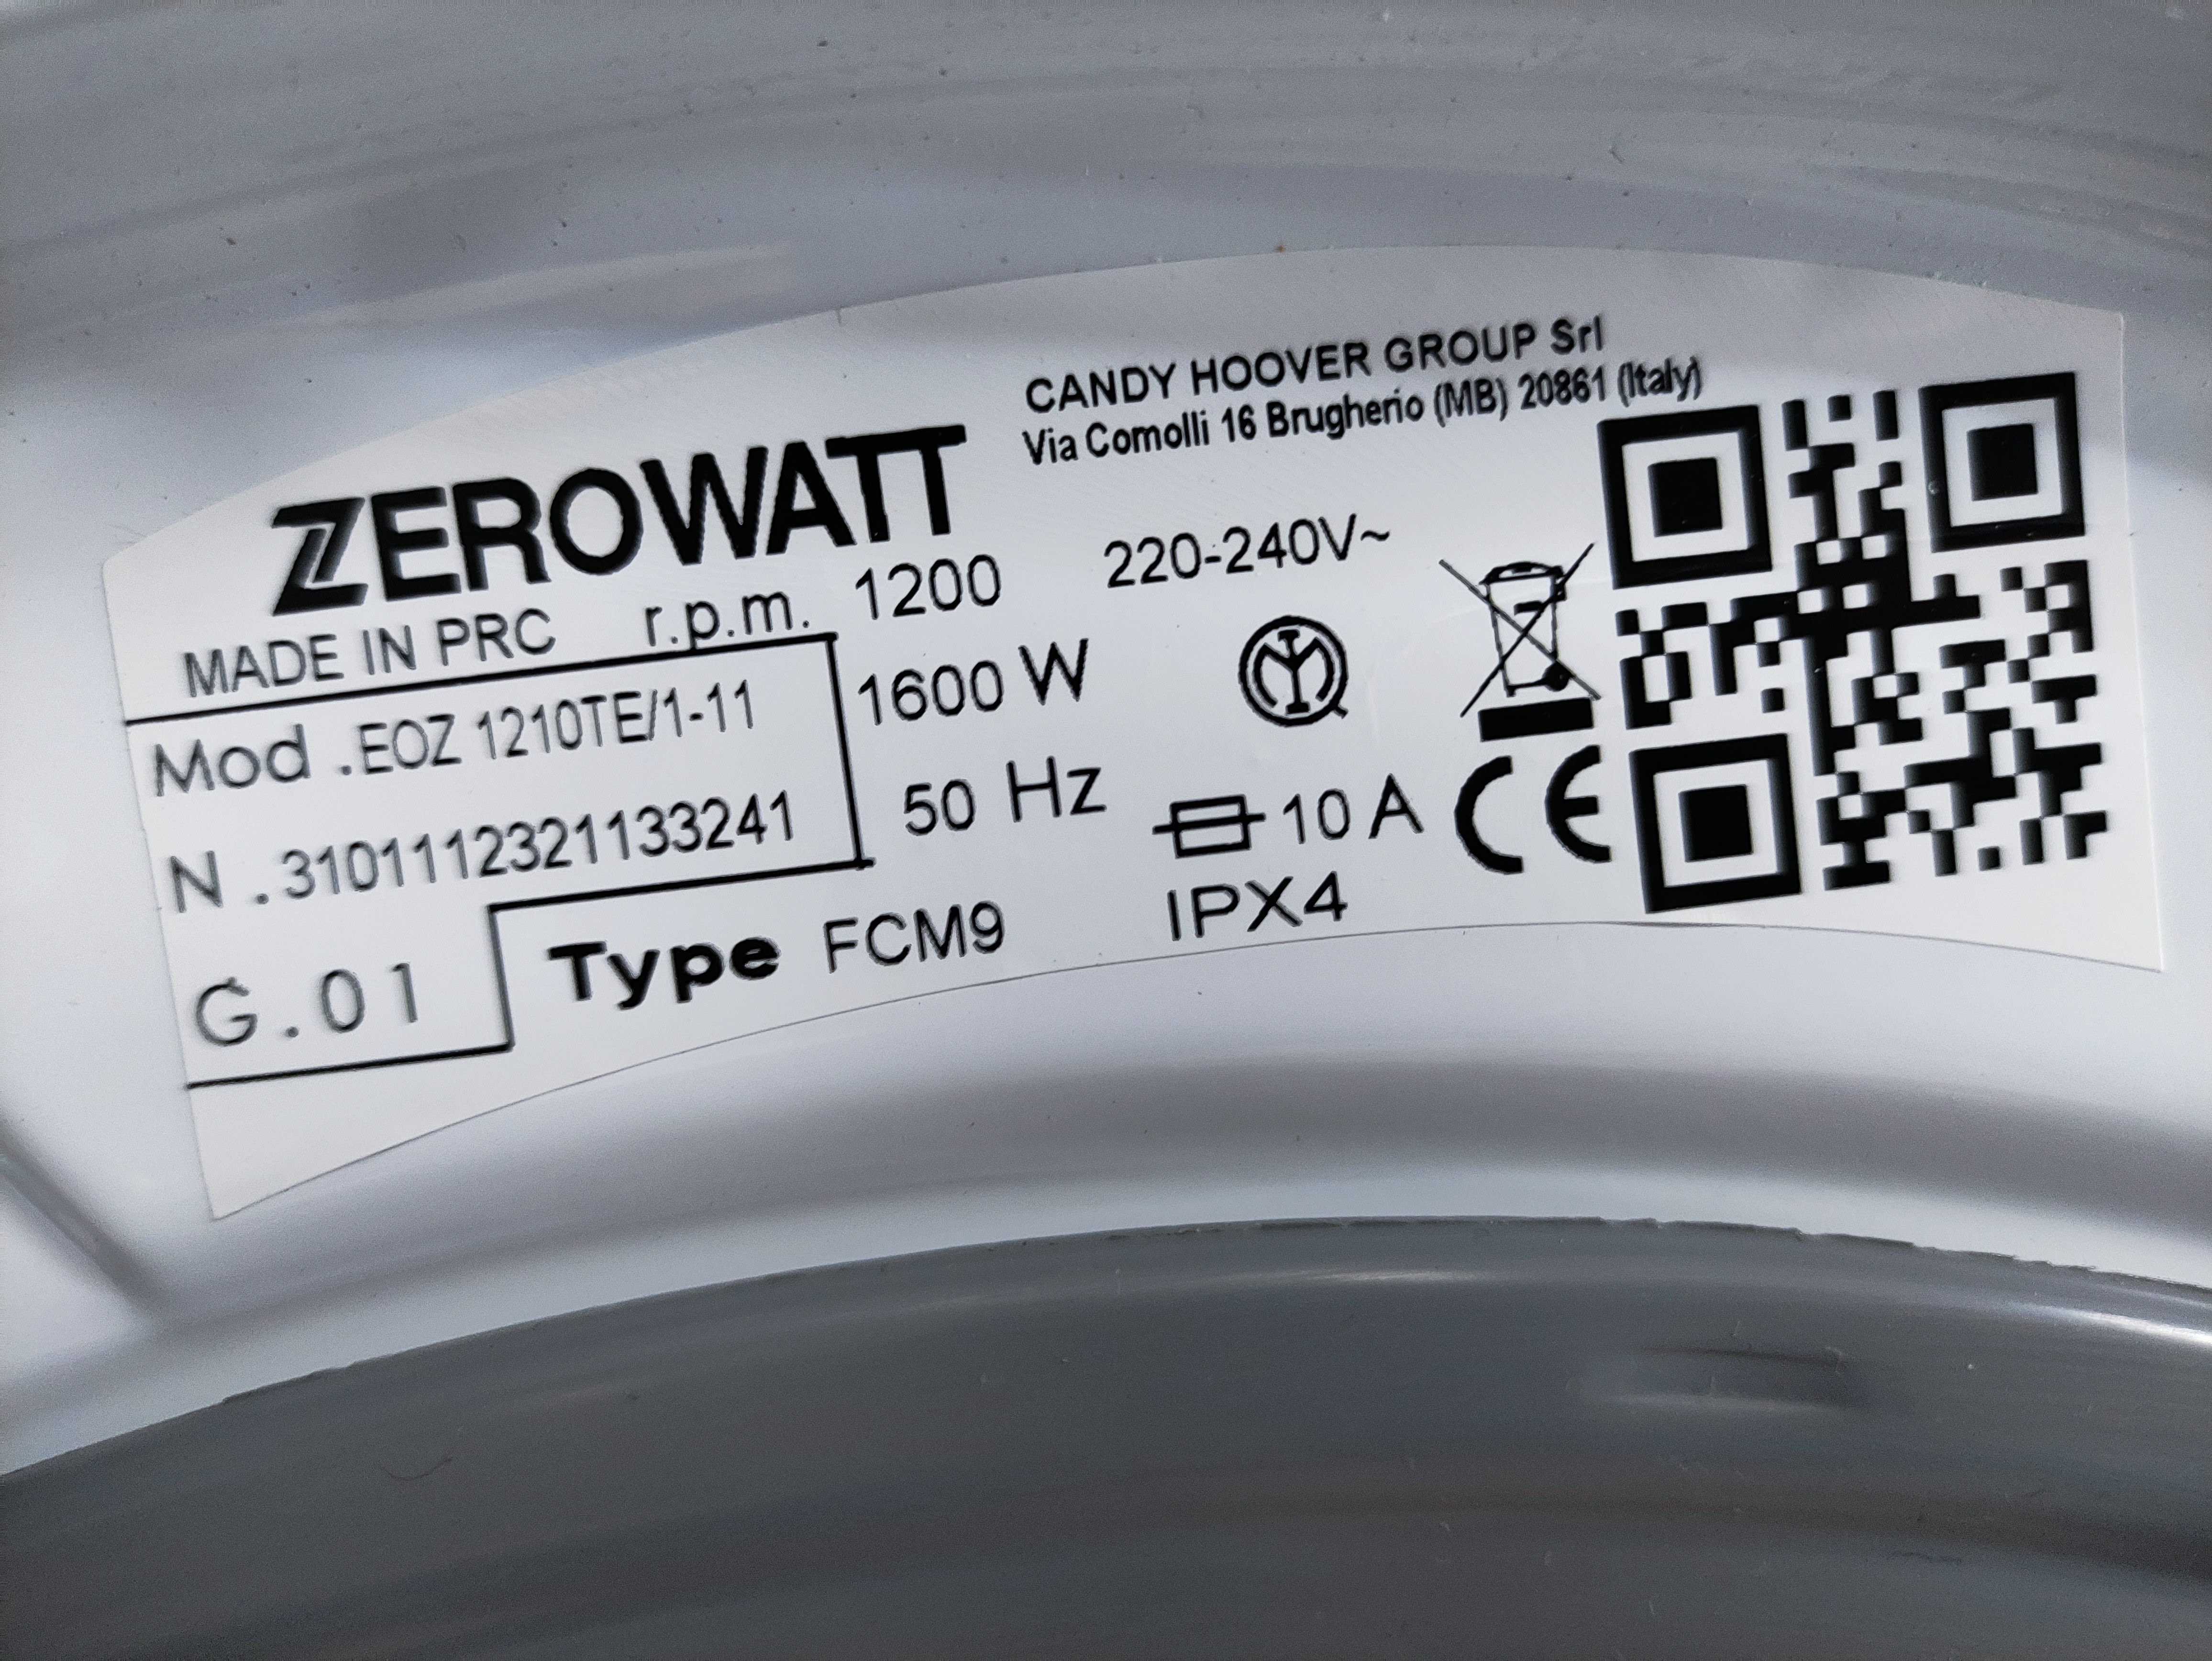 Veš mašina Zerowatt EOZ 1210TE/1-11 , 10 kg